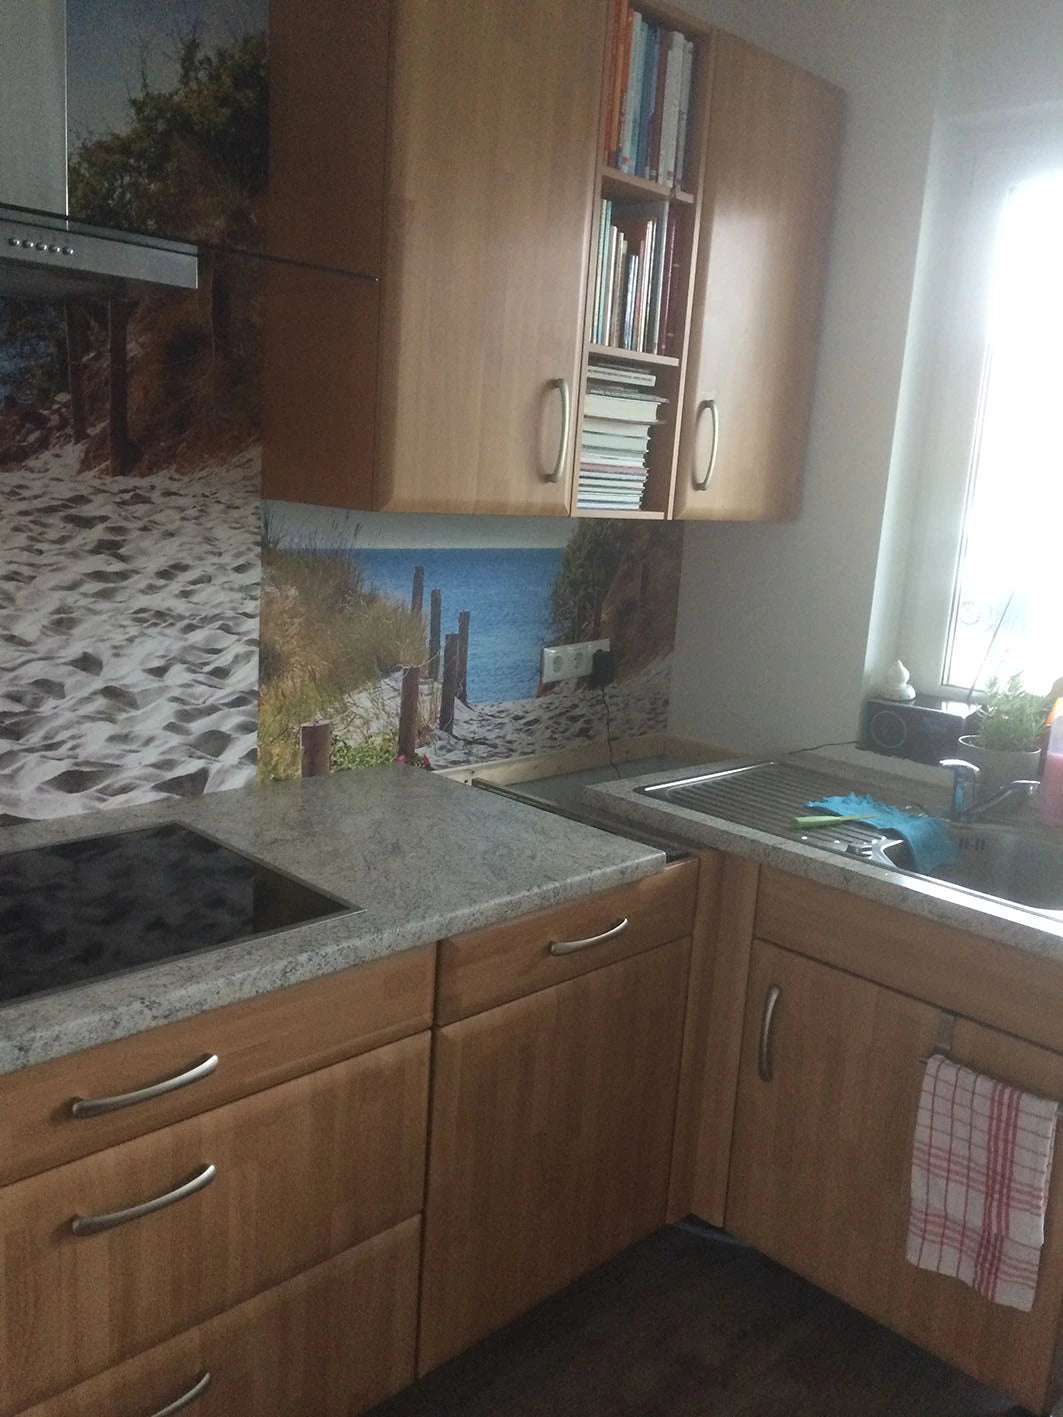 Bedruckter Foto-Vinylboden statt auf dem Fußboden als Wandbehang mit Motiv einer Düne an der Ostsee bedruckt Gesamtansicht in der Küche